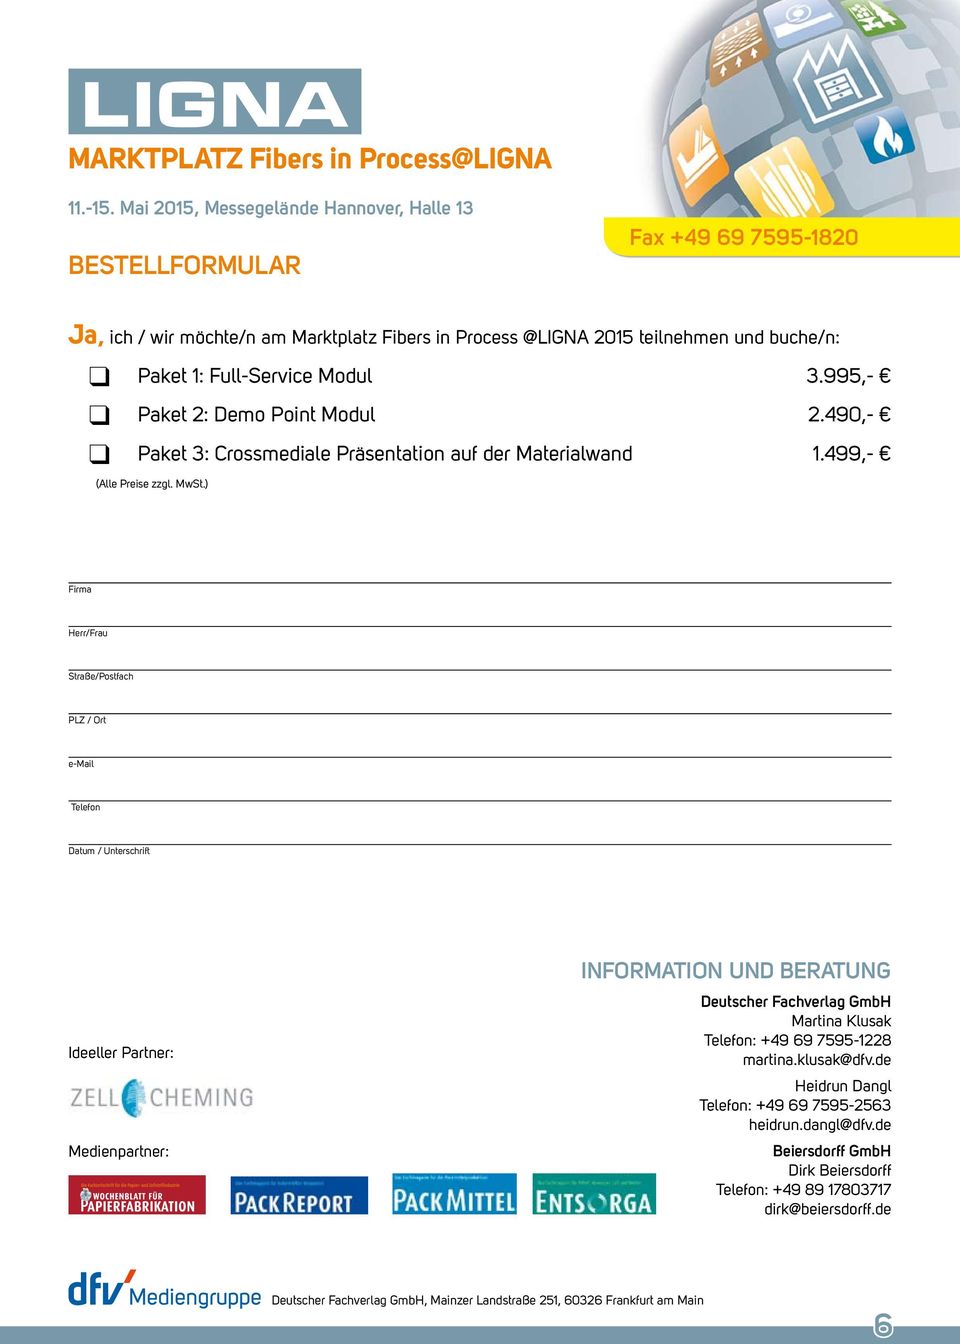 ) Firma Herr/Frau Straße/Postfach PLZ / Ort e-mail Telefon Datum / Unterschrift Ideeller Partner: Medienpartner: information UnD BERaTUng Deutscher Fachverlag gmbh Martina Klusak